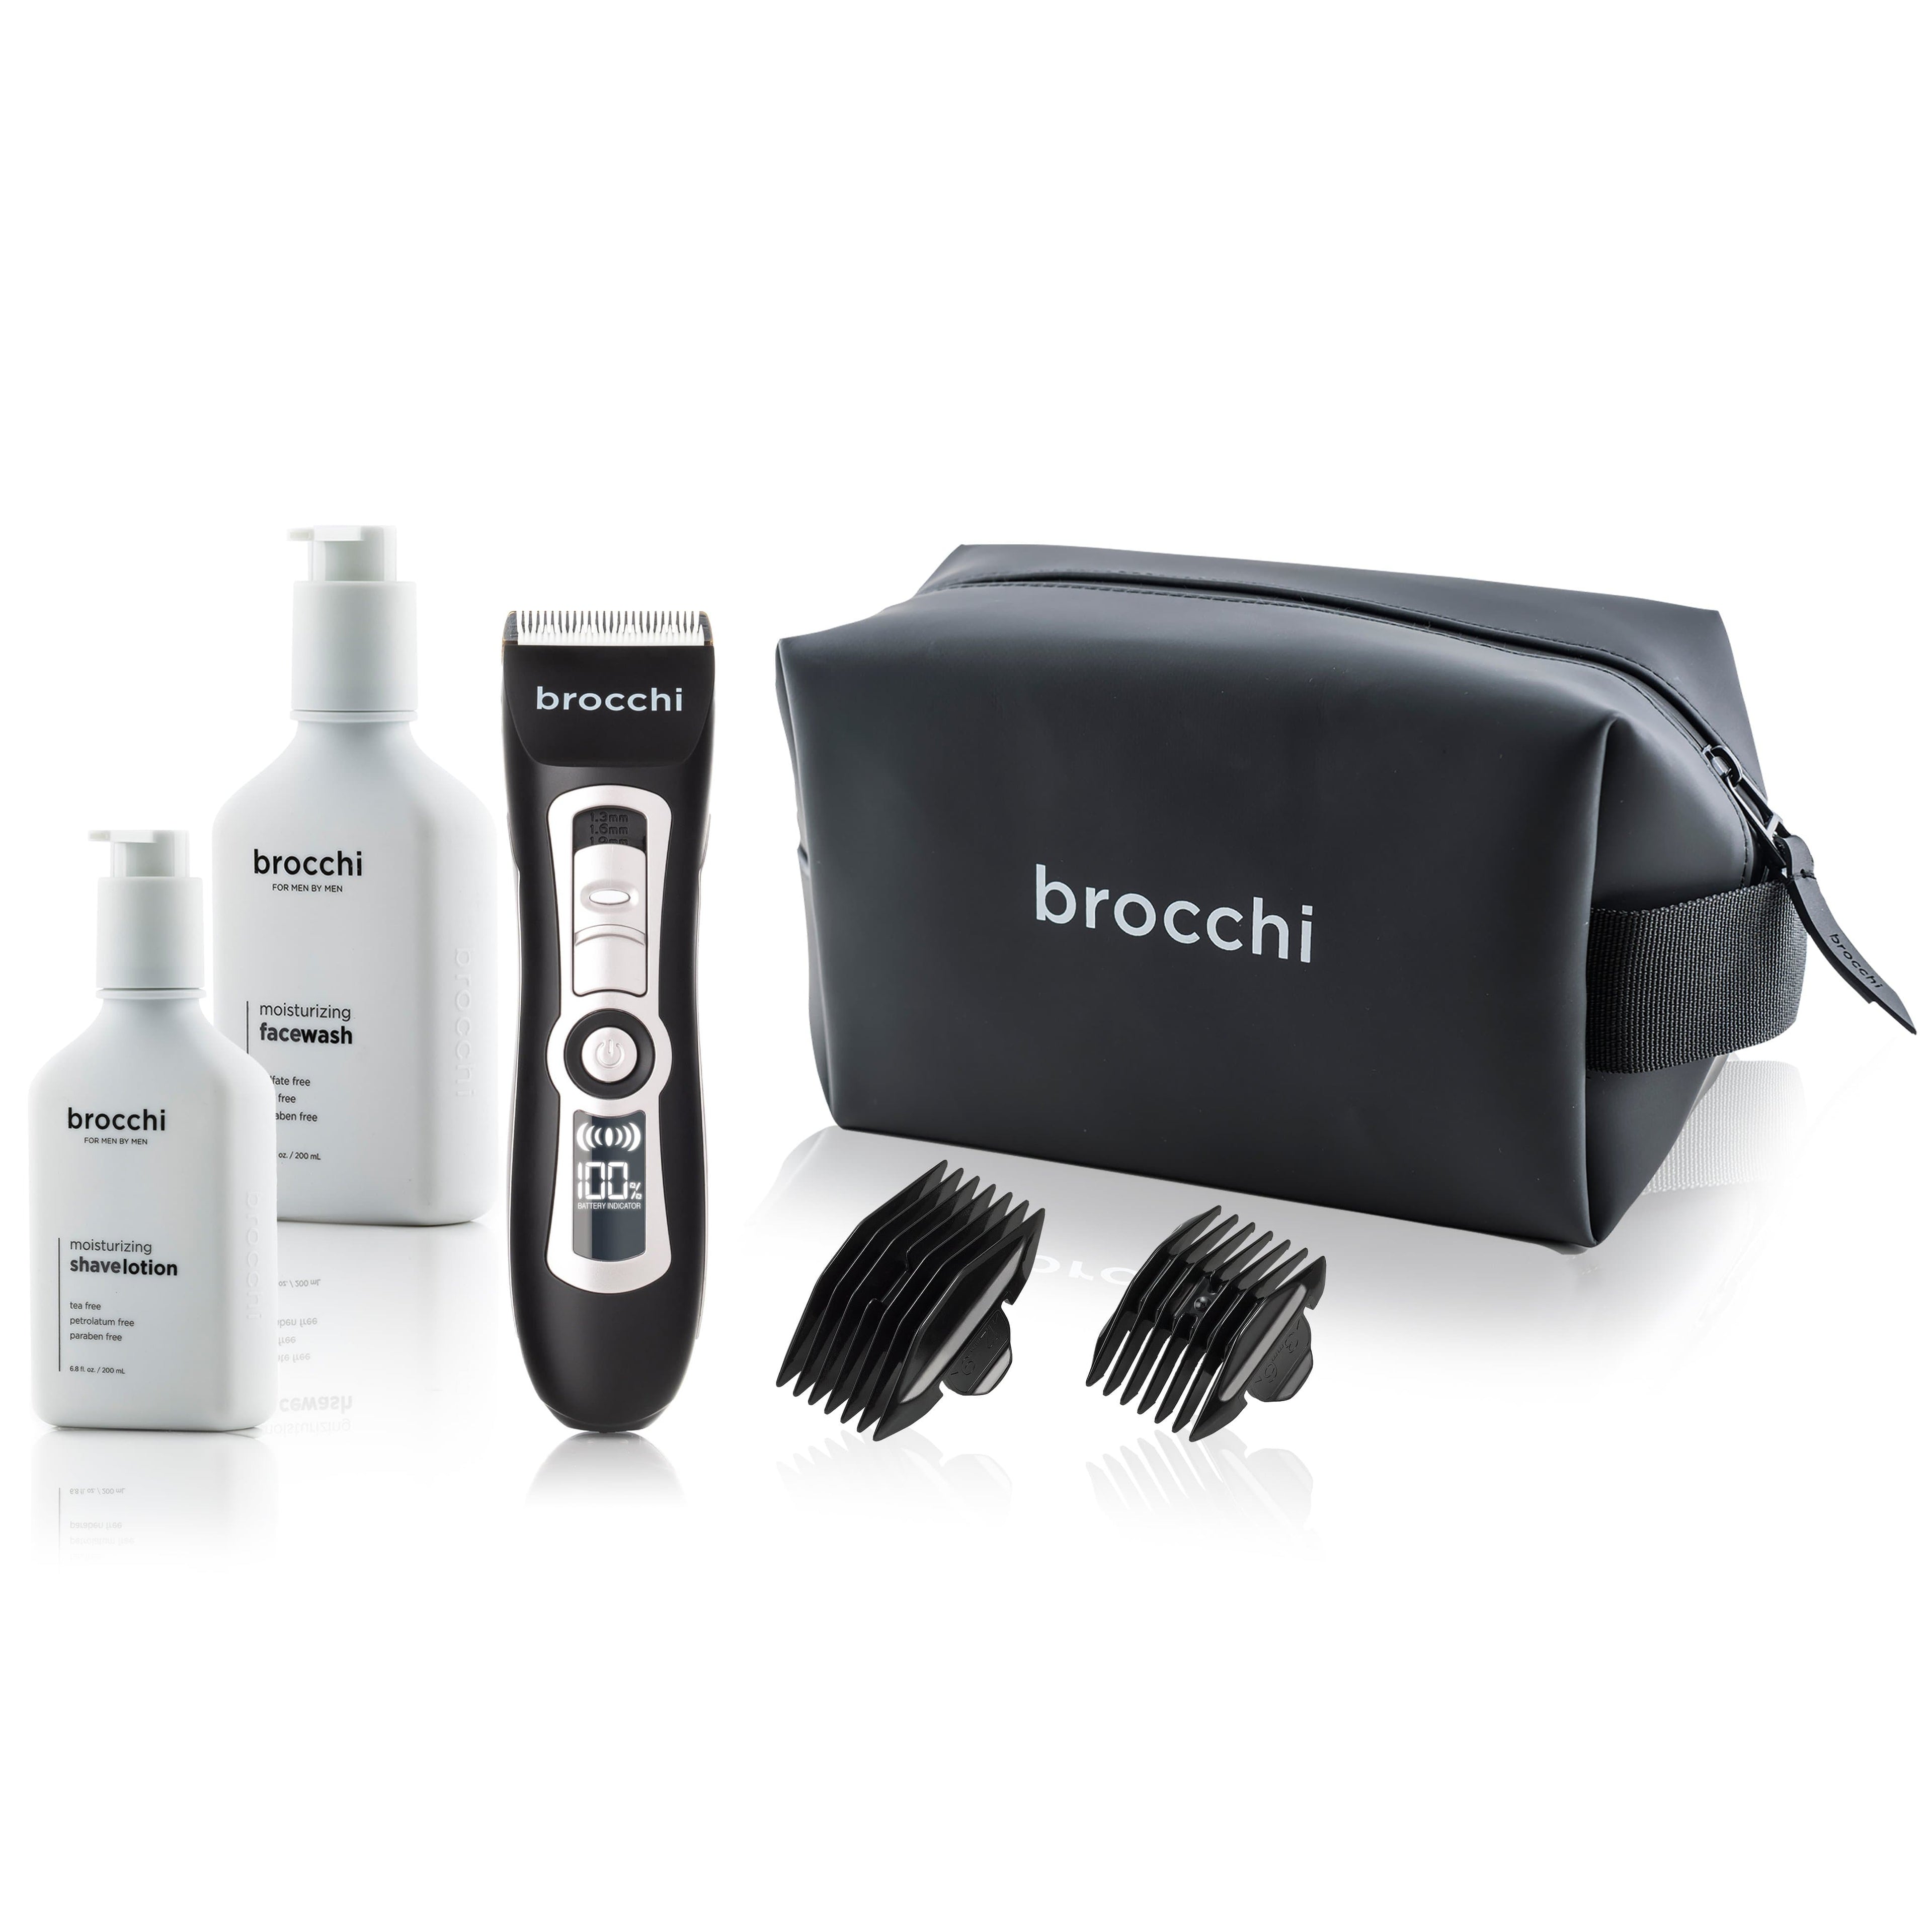 brocchi Shaving Essentials - Digital Trimmer, Face Wash, Shave Lotion &amp; Travel Bag